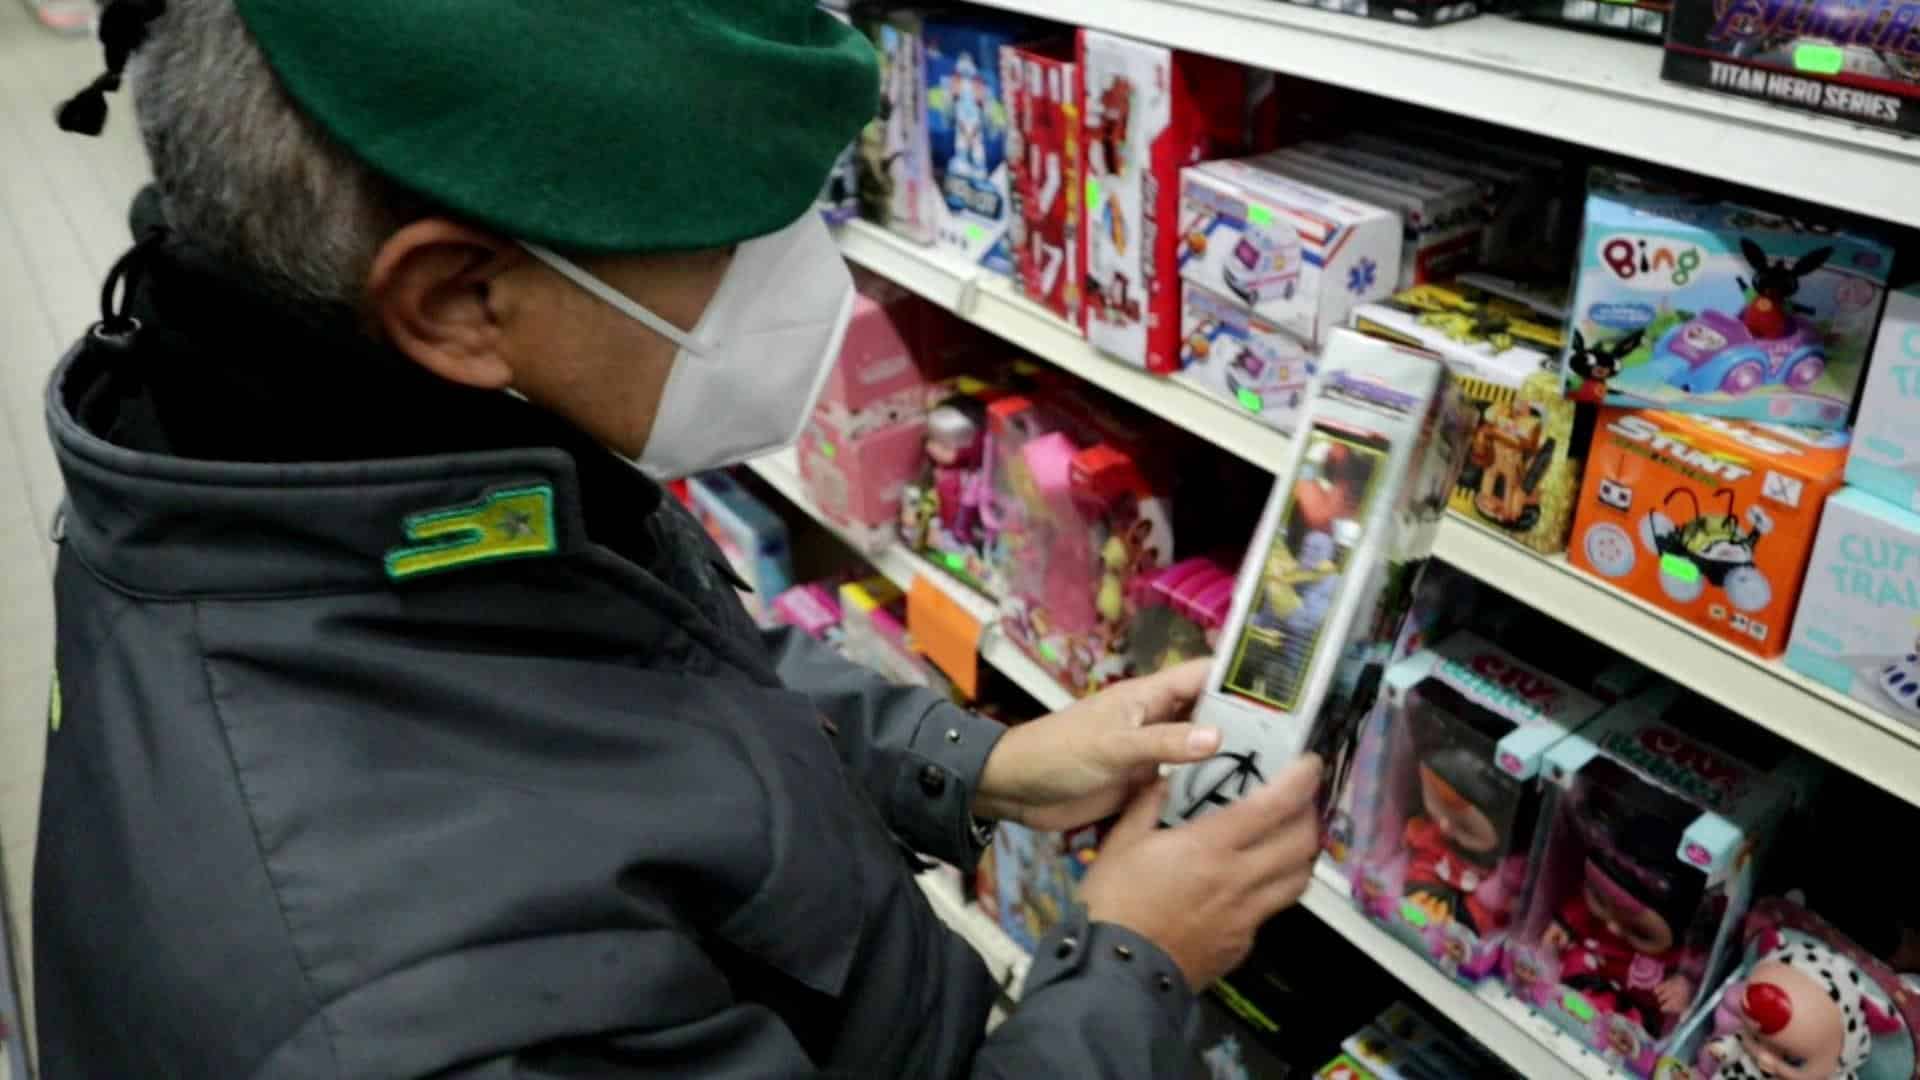 Caltanissetta, sequestrati in provincia oltre 15mila giocattoli e articoli pericolosi